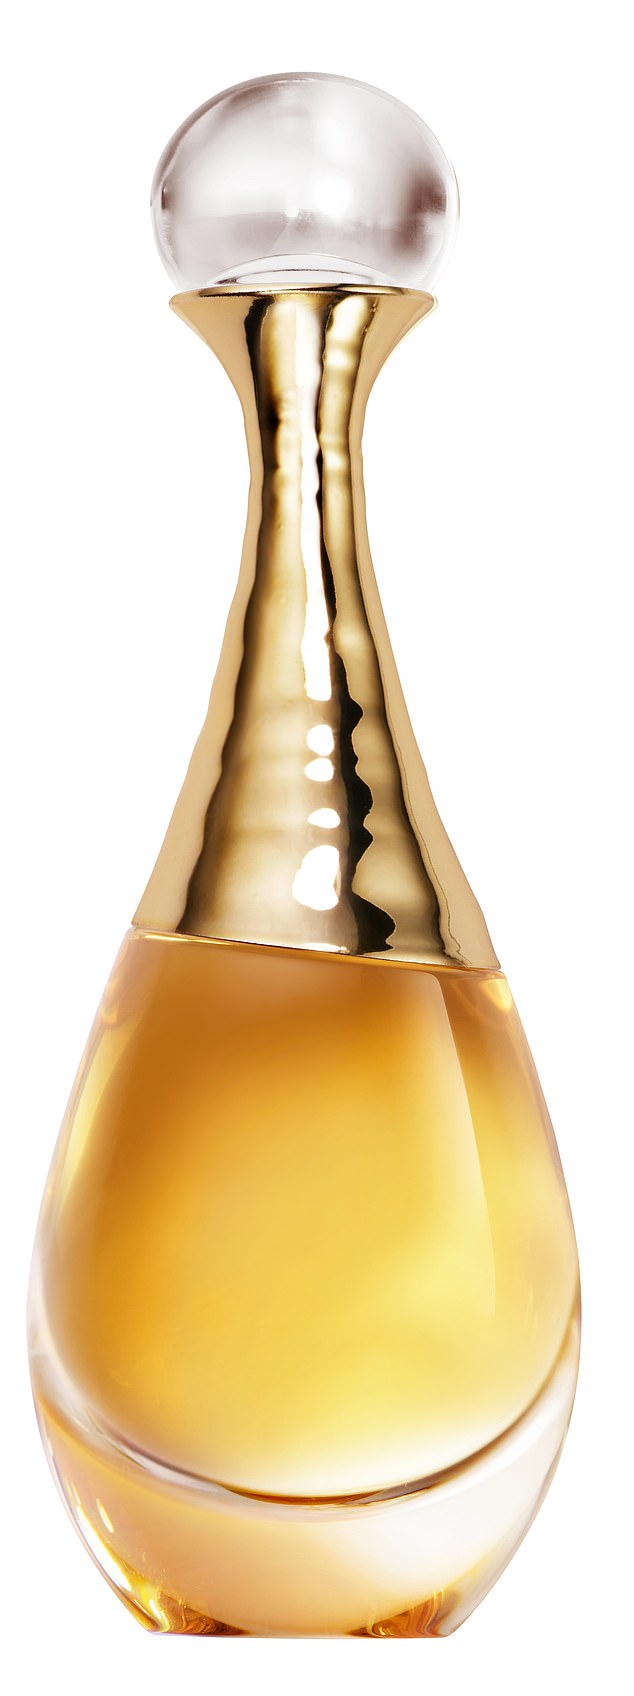 J'adore L'Or Essence de Parfum (£144 for 50ml, dior.com)